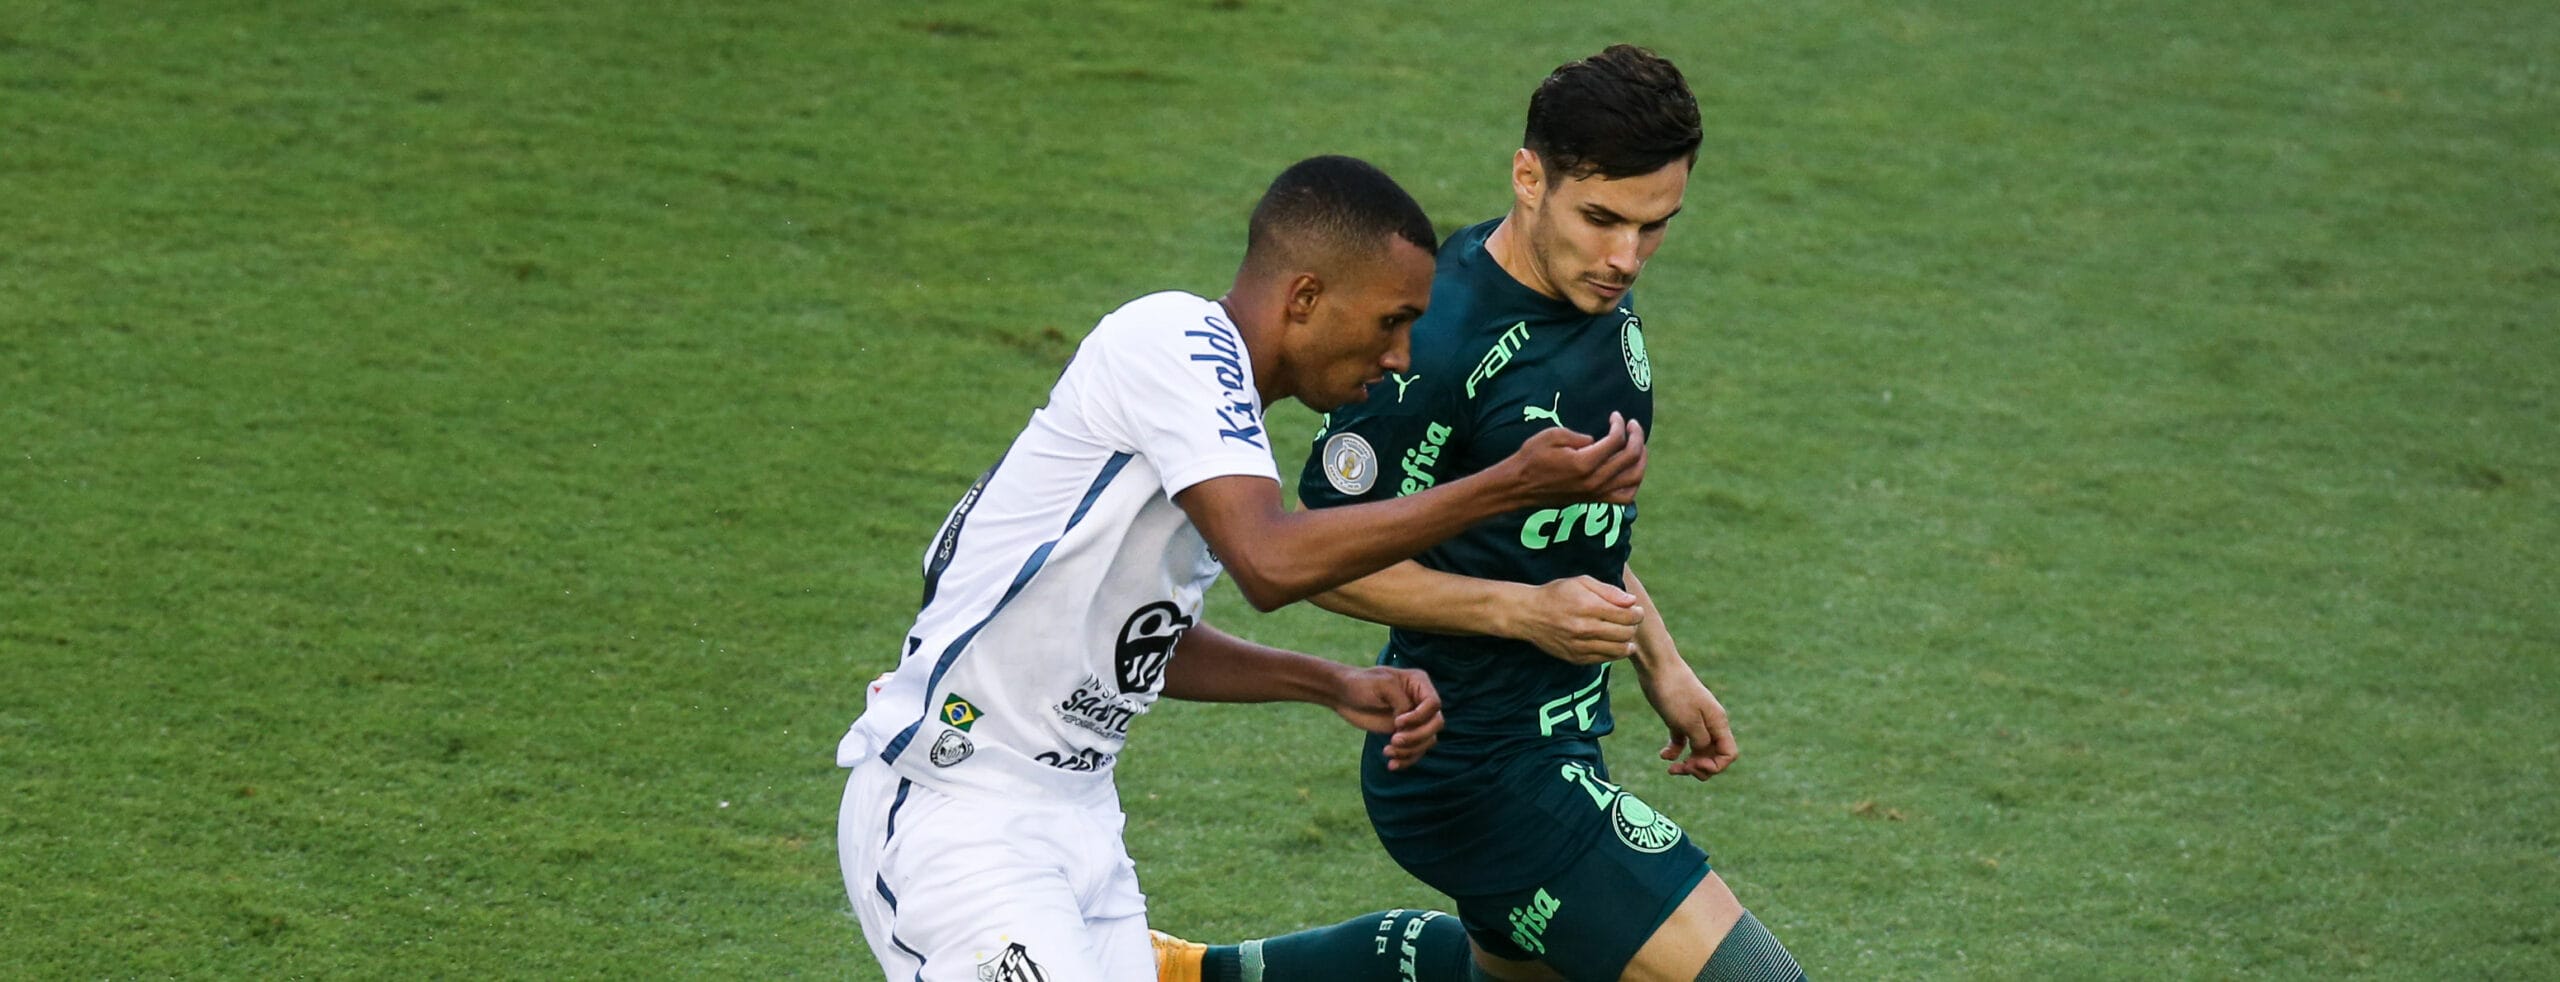 Copa Libertadores: Brasilianisches Duell im Finale